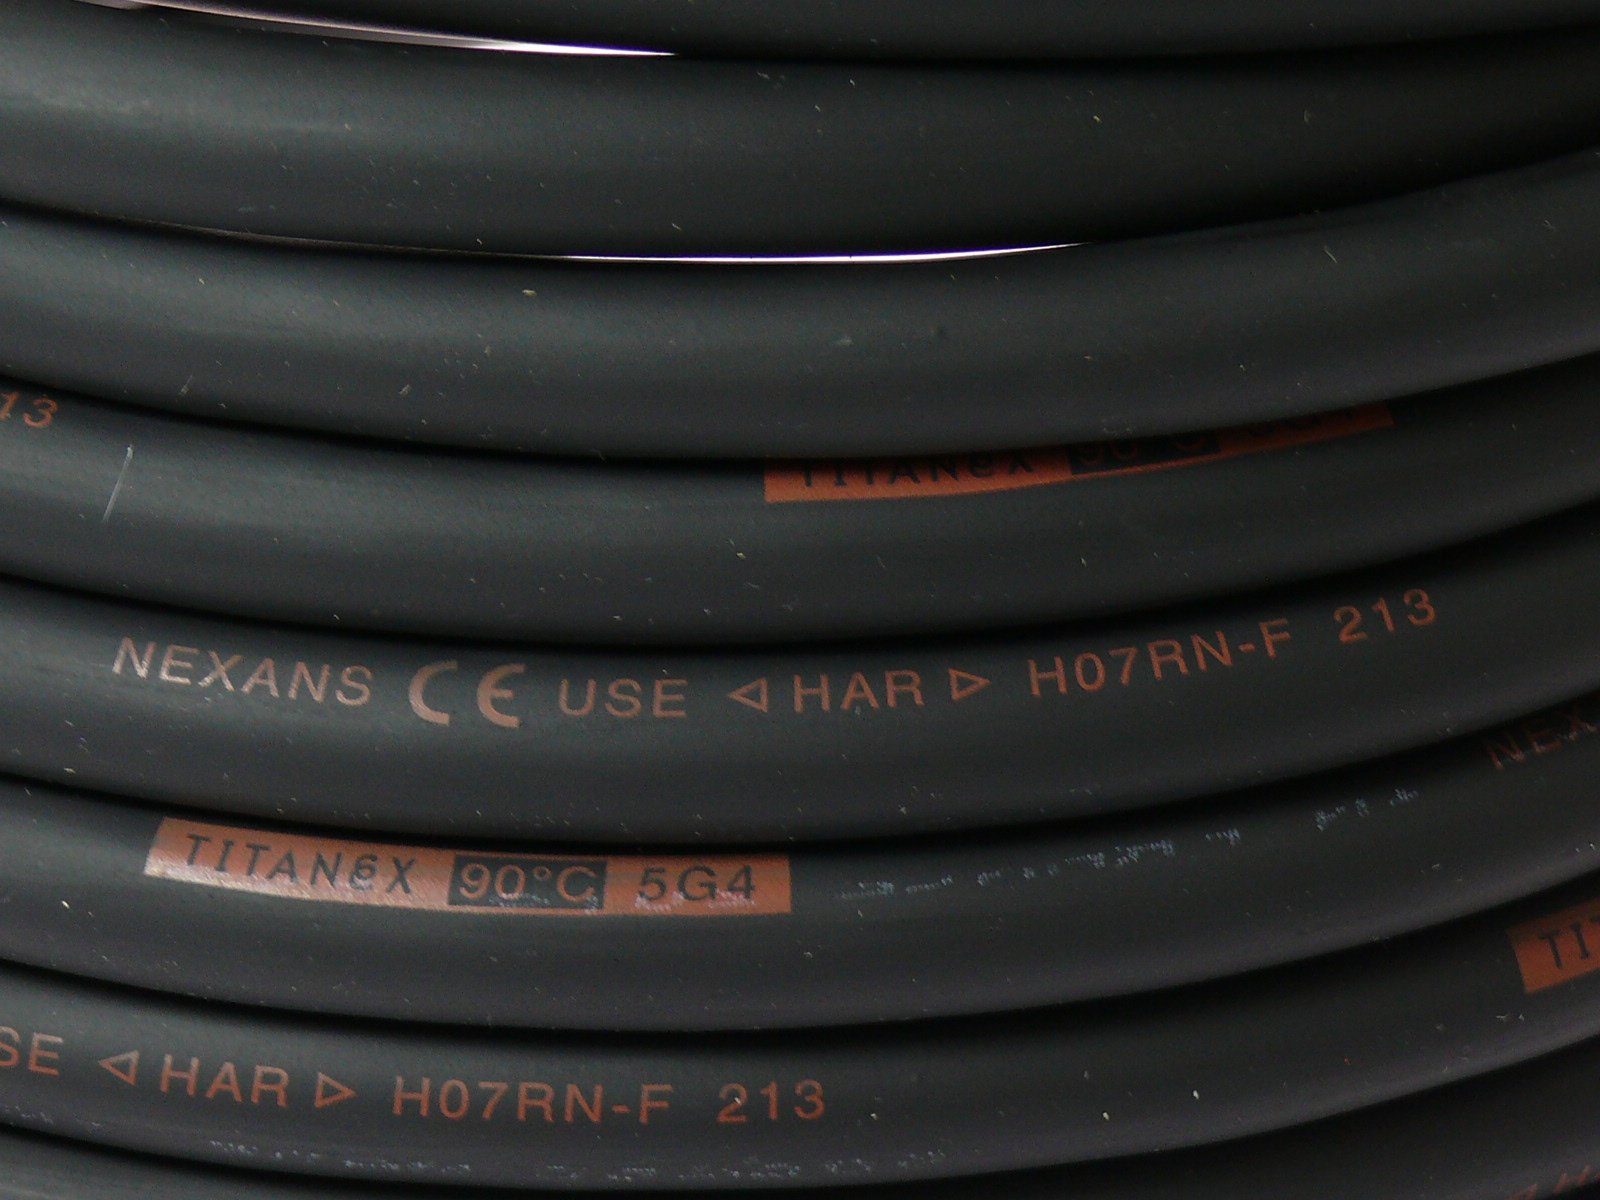 Titanex TITANEX H07RN-F 5x4 5G4 (500 Gummischlauchleitung cm) Elektro-Kabel, 5m